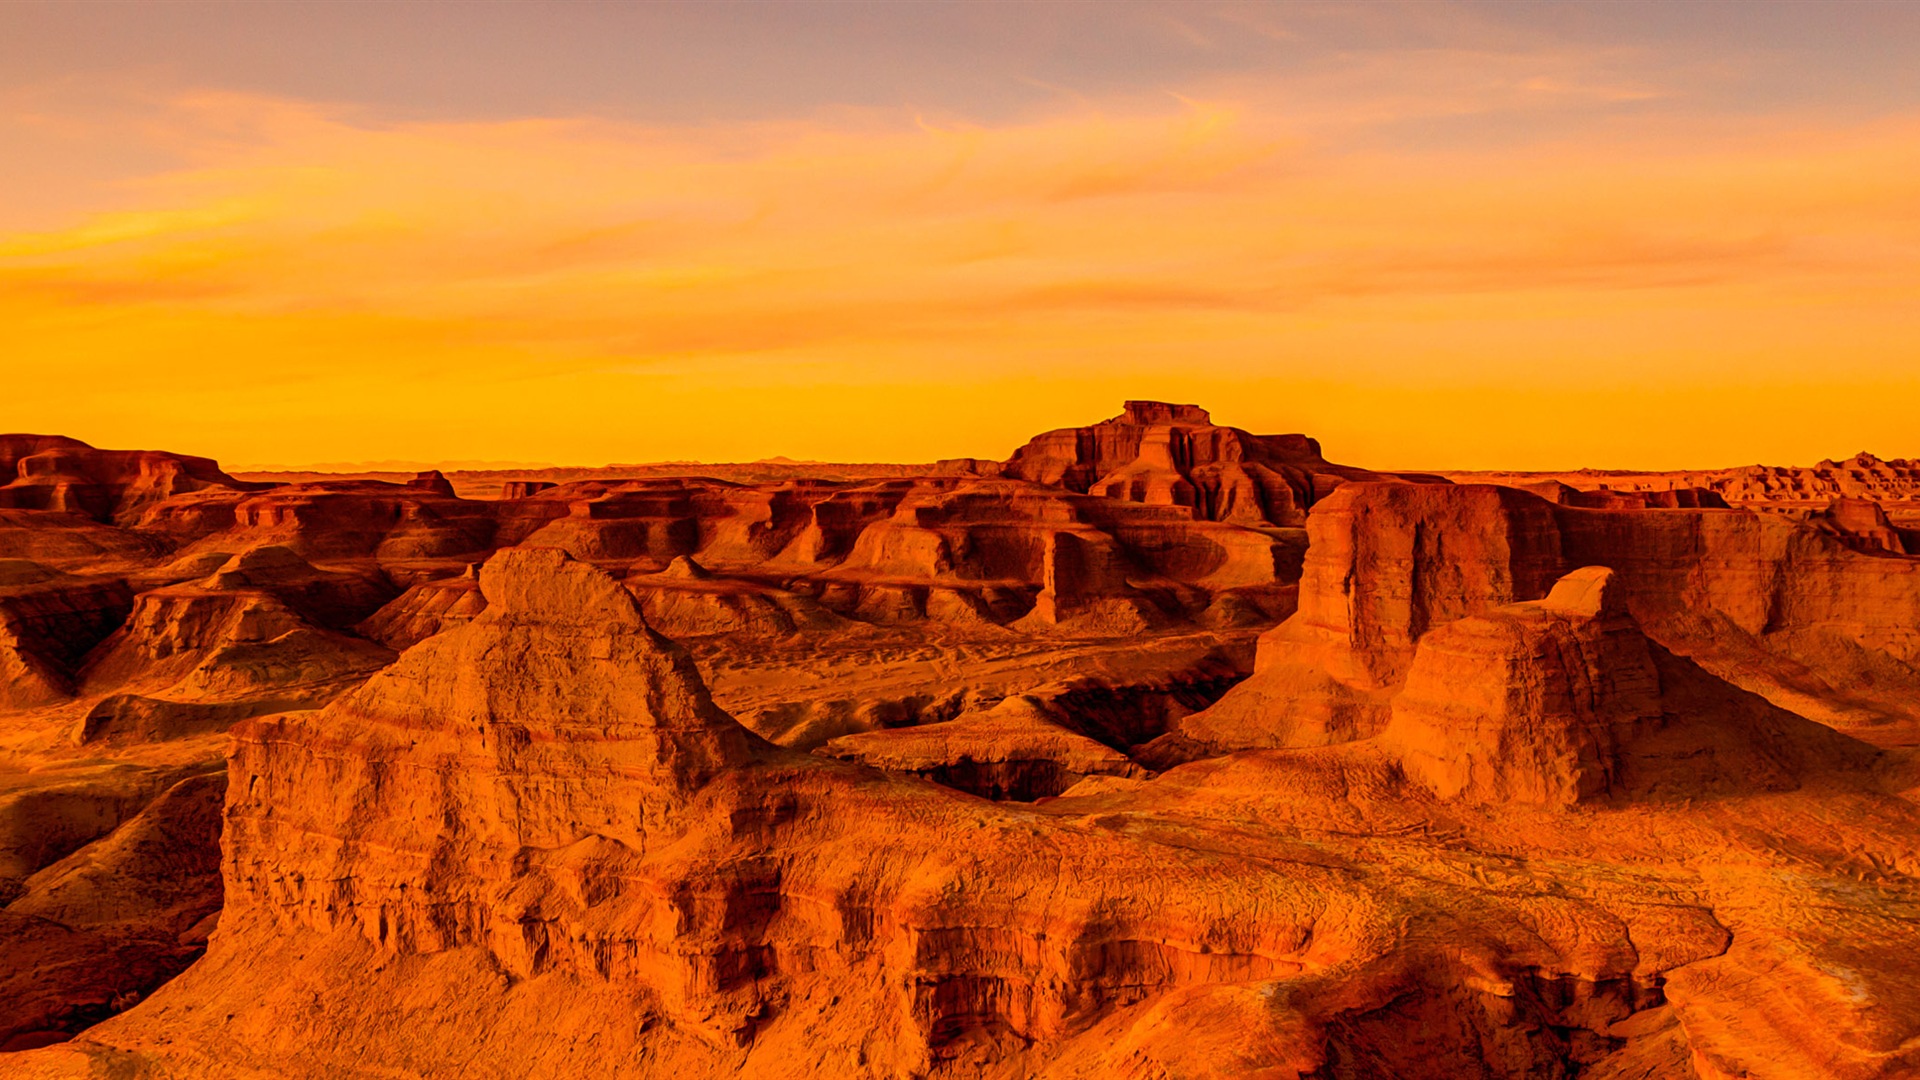 Les déserts chauds et arides, de Windows 8 fonds d'écran widescreen panoramique #6 - 1920x1080